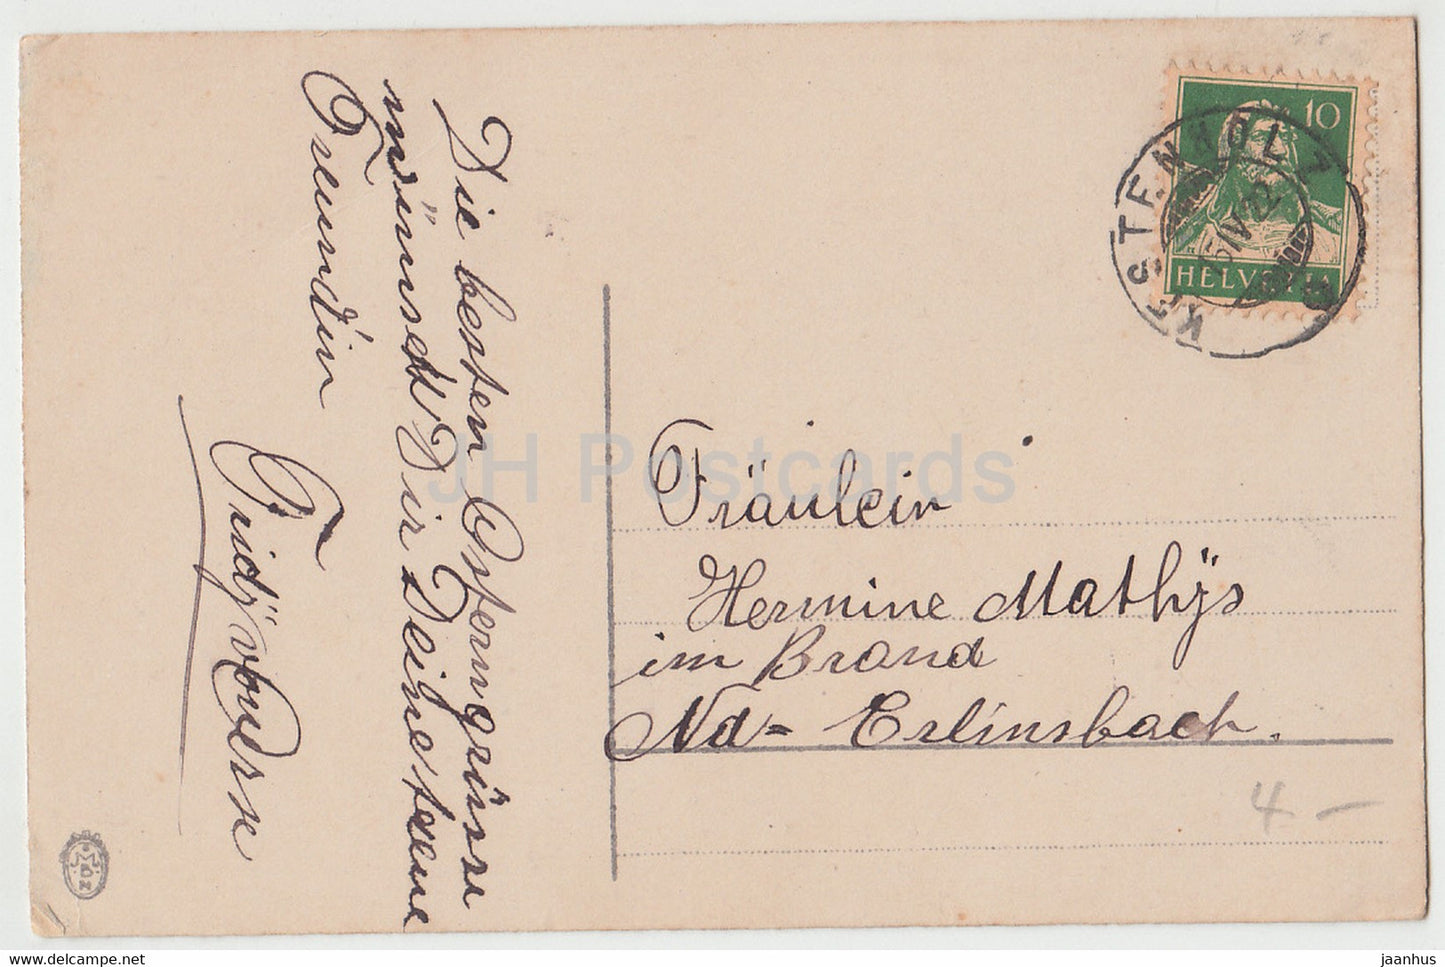 Ostergrußkarte - Ostergruße - Glocke - Blumen - MBM - alte Postkarte - 1922 - Deutschland - unbenutzt